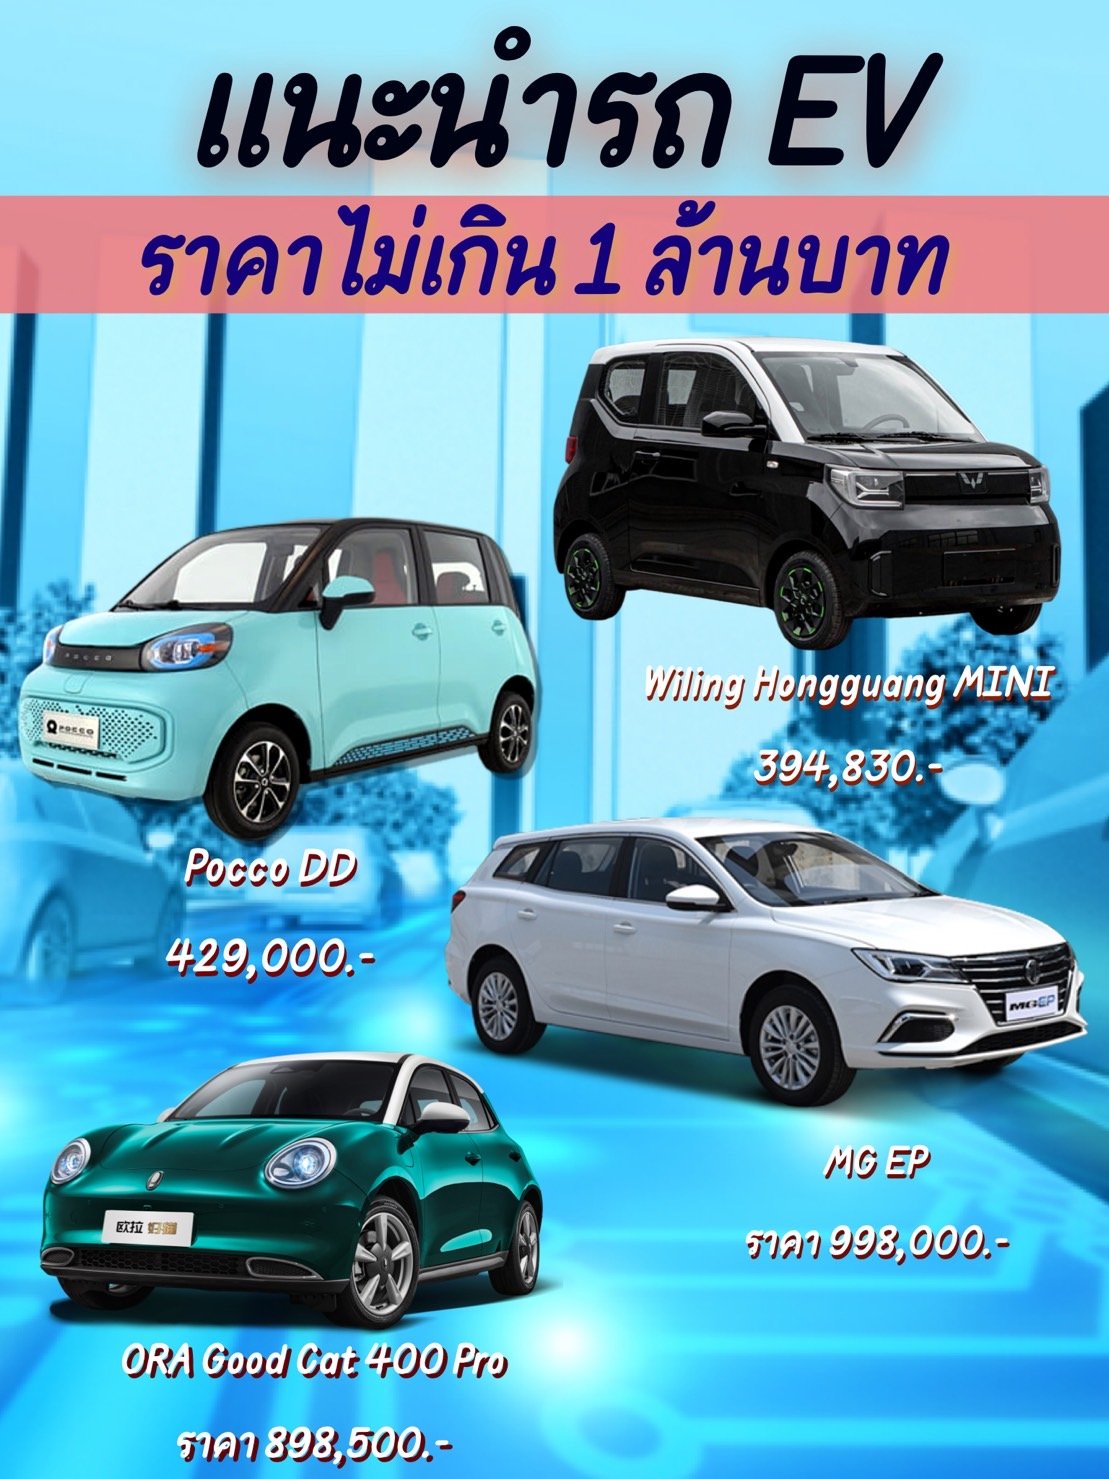 แนะนำรถยนต์ไฟฟ้า EV ราคาไม่เกิน 1 ล้านบาท ที่พร้อมเปิดจองแล้วในไทย 